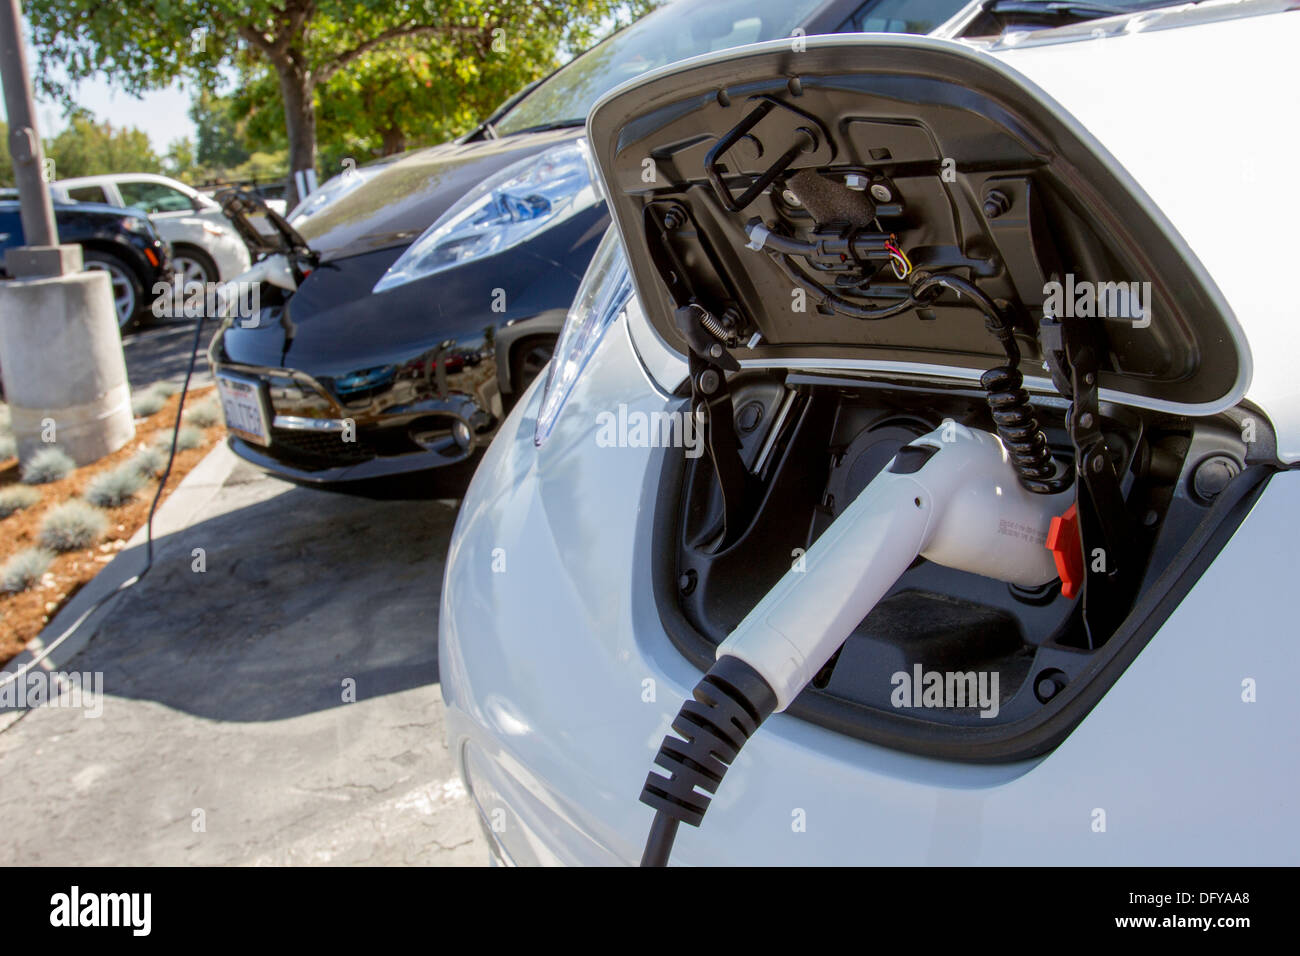 Plug-in electric cars con conectores enchufados en una estación de carga para recargar sus baterías en un estacionamiento de la empresa Foto de stock